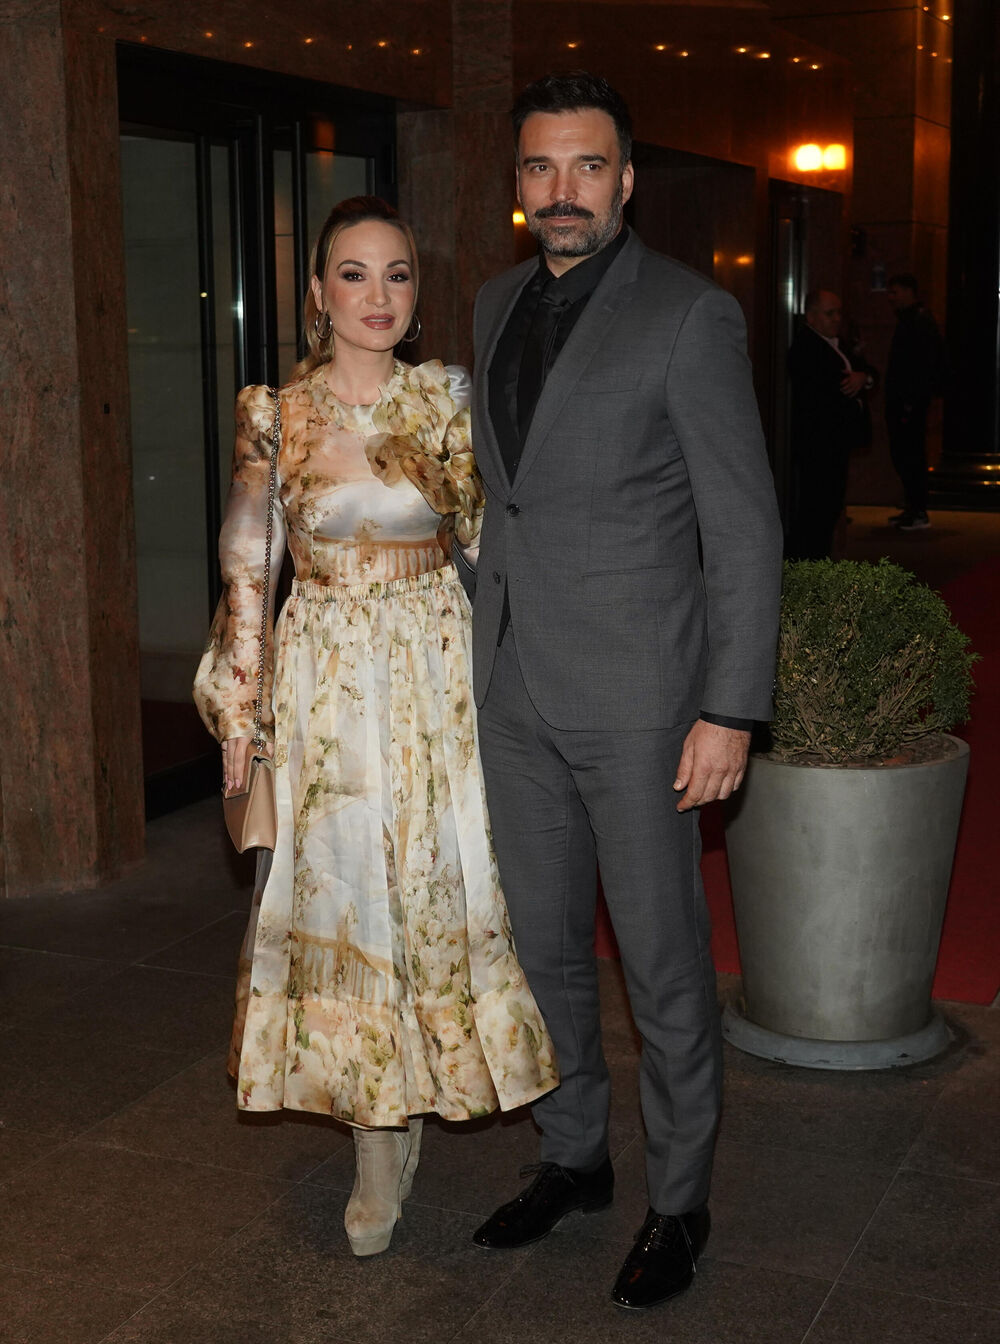 Glumac Ivan Bosiljčić i pevačica Jelena Tomašević jedan su od najskladnijih parova